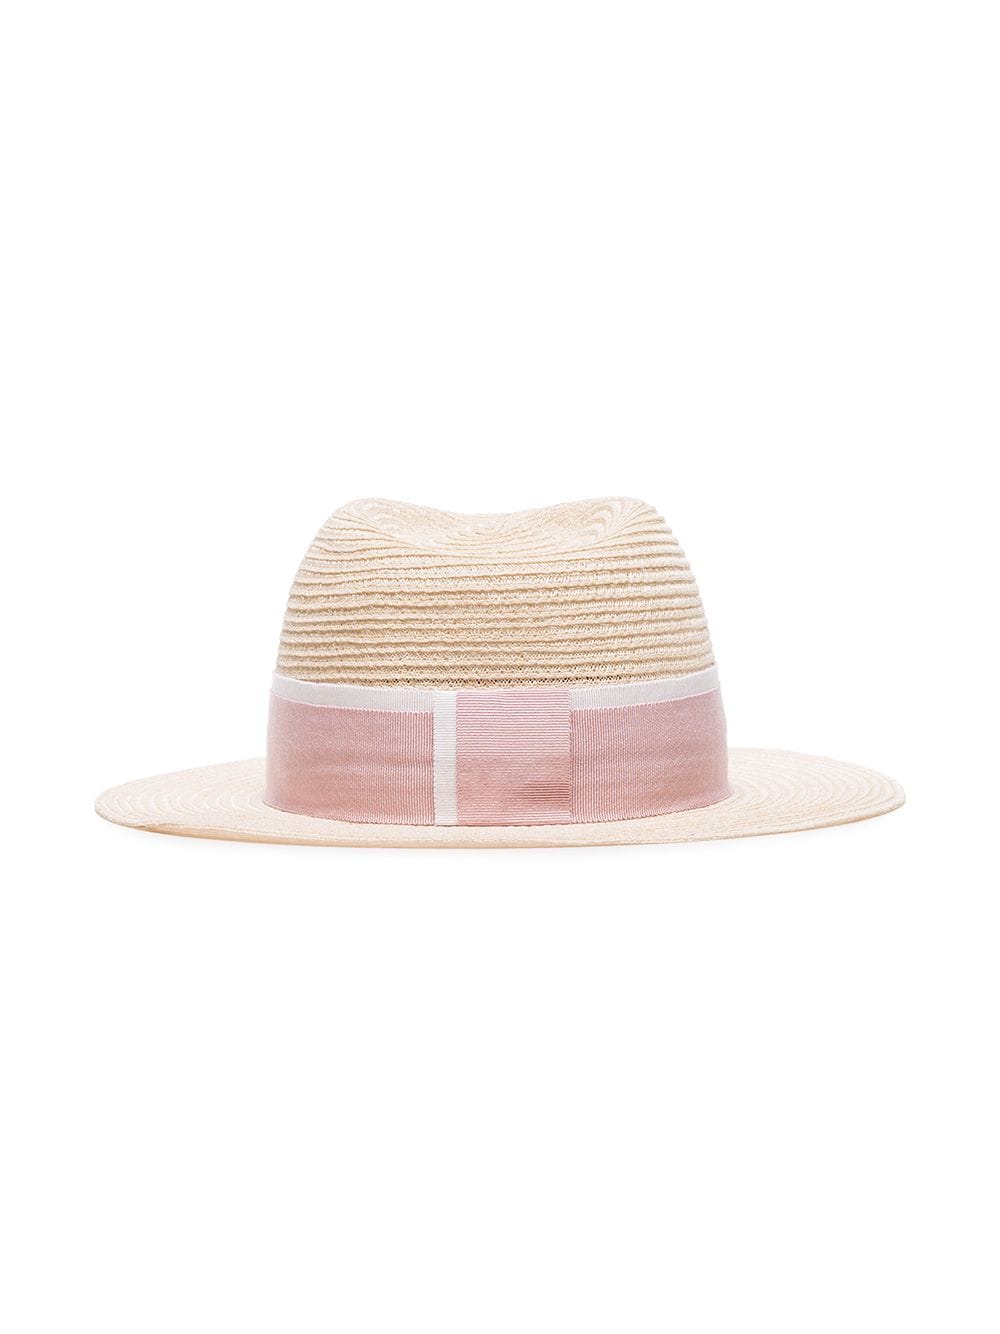 фото Maison michel декорированная соломенная шляпа с логотипом